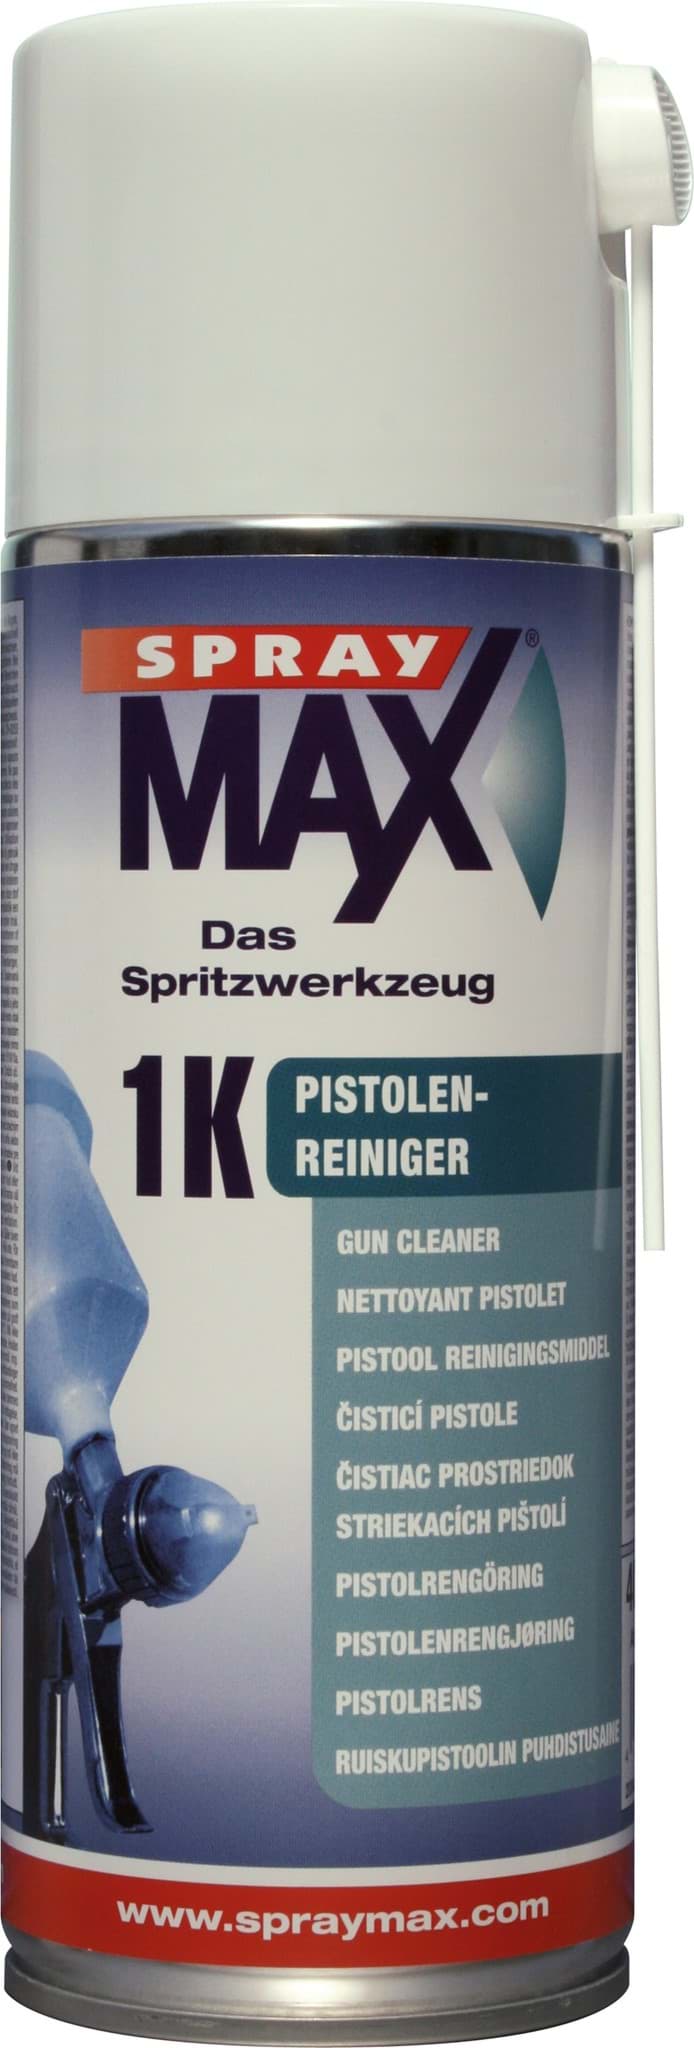 SprayMax Pistolen-Reiniger Spray 400ml resmi